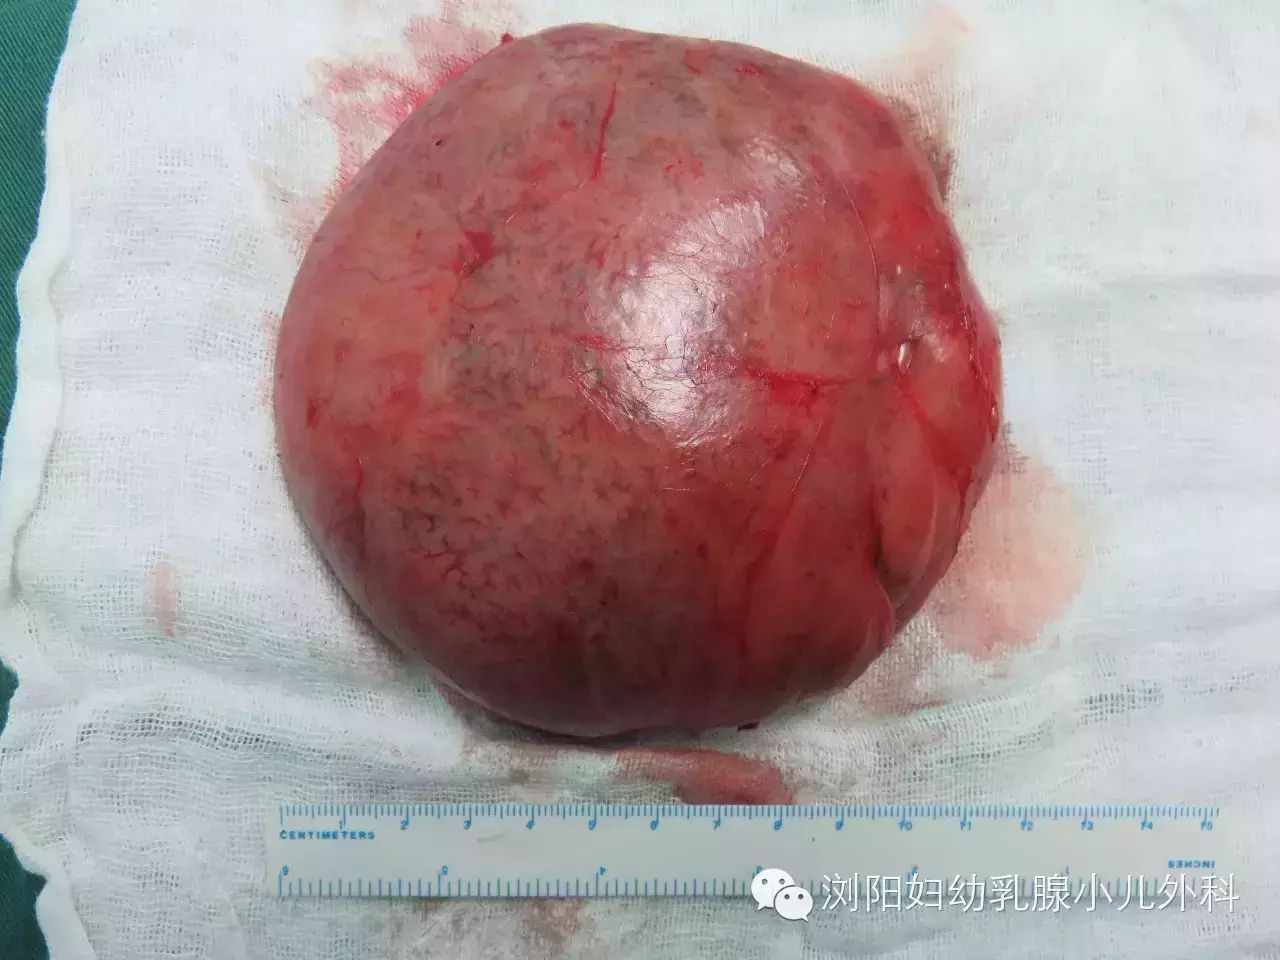 青青右侧乳房切下的巨大肿瘤,最大直径达13cm.